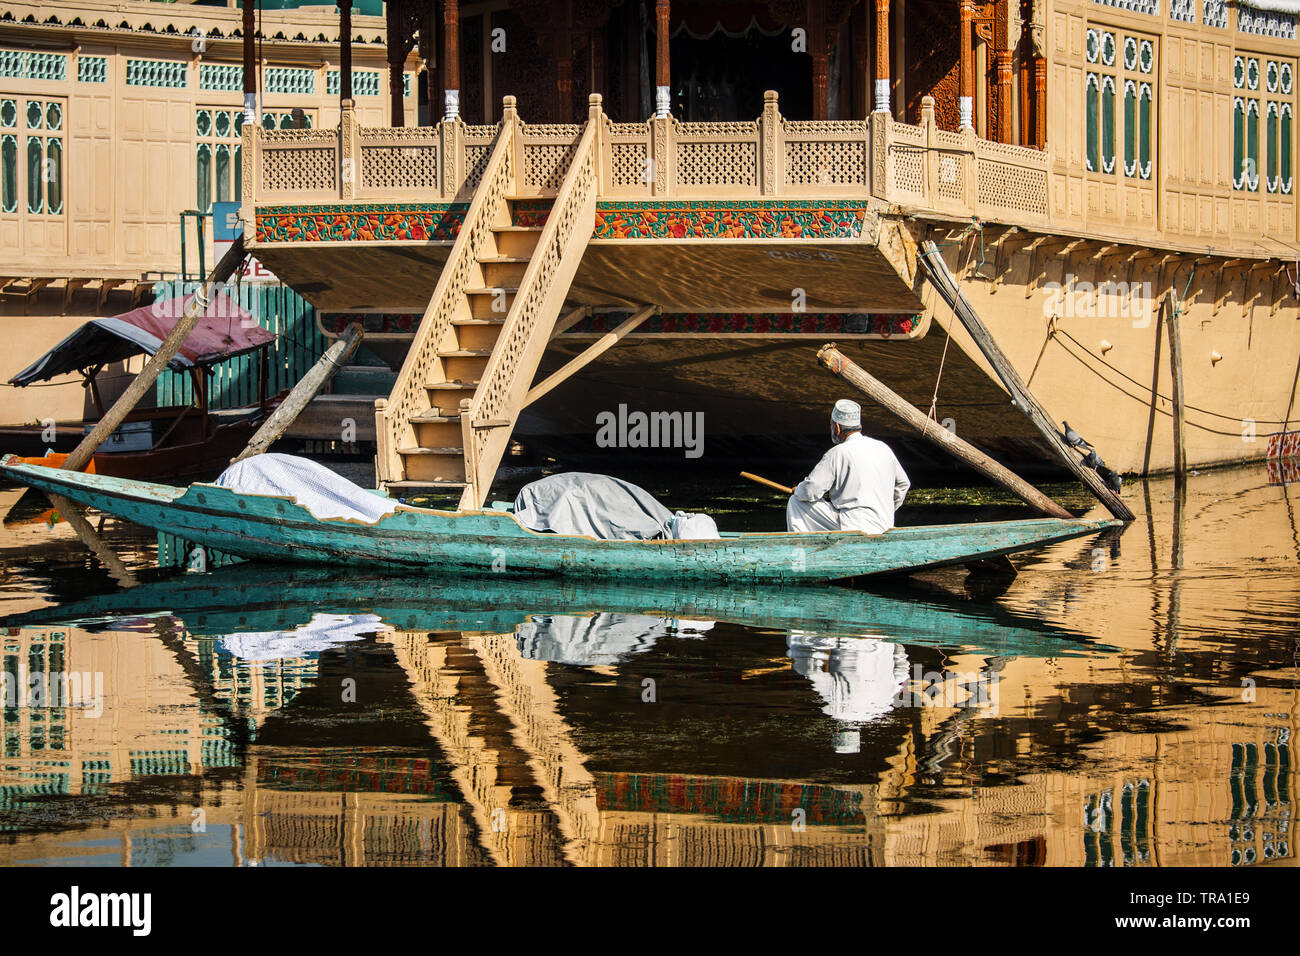 Uomo musulmano con torna alla fotocamera in una lunga barca accanto a remi splendidamente ornate houseboats sul famoso Dal Lago di Srinagar nella valle del Kashmir Foto Stock